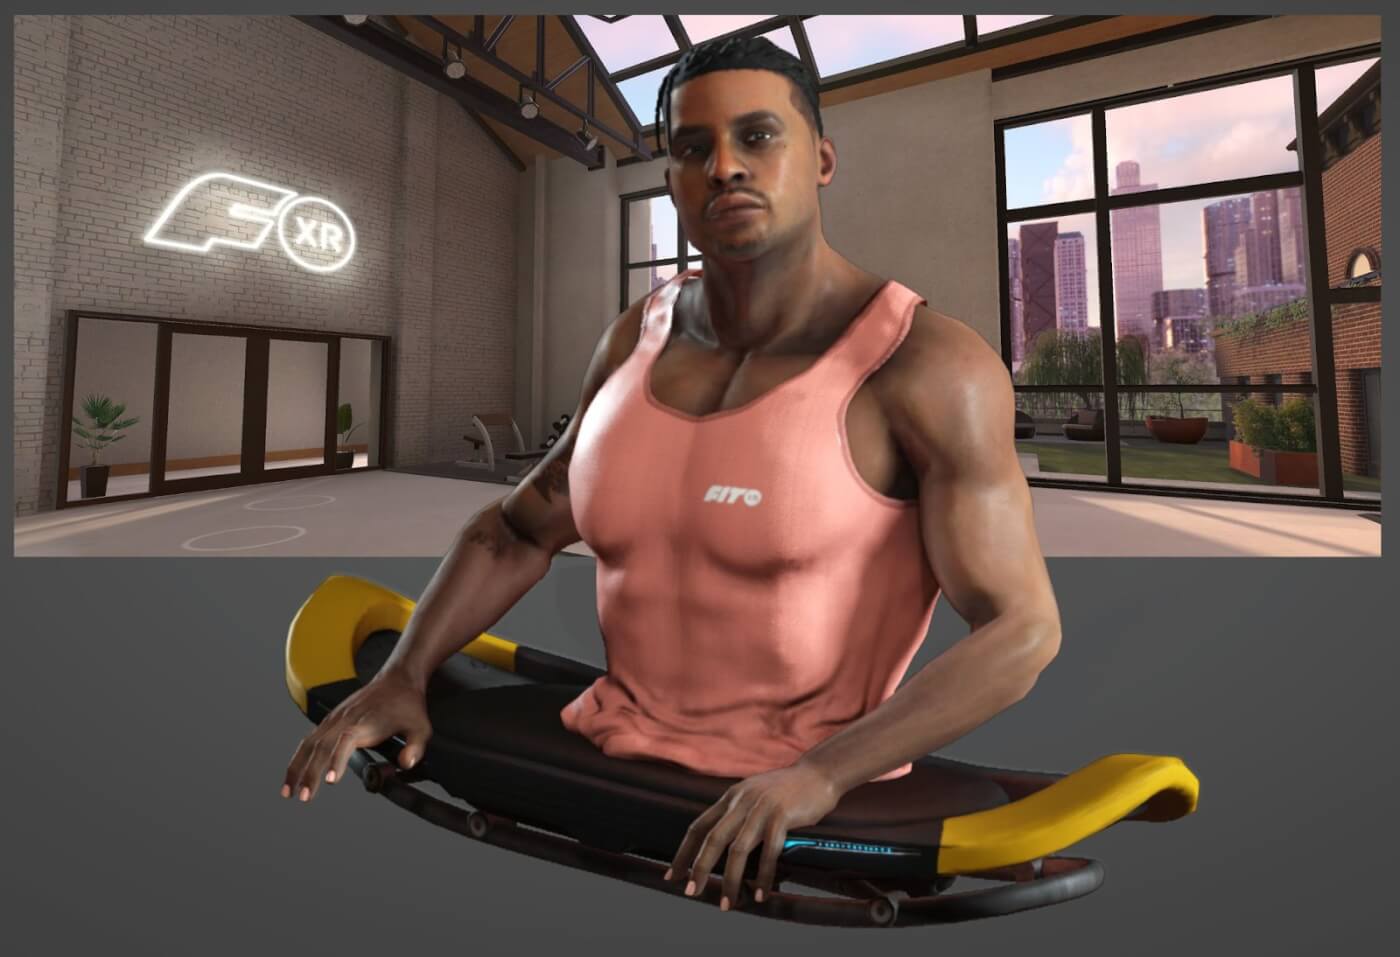 VR fitness FitXR Zion Clark new avatar